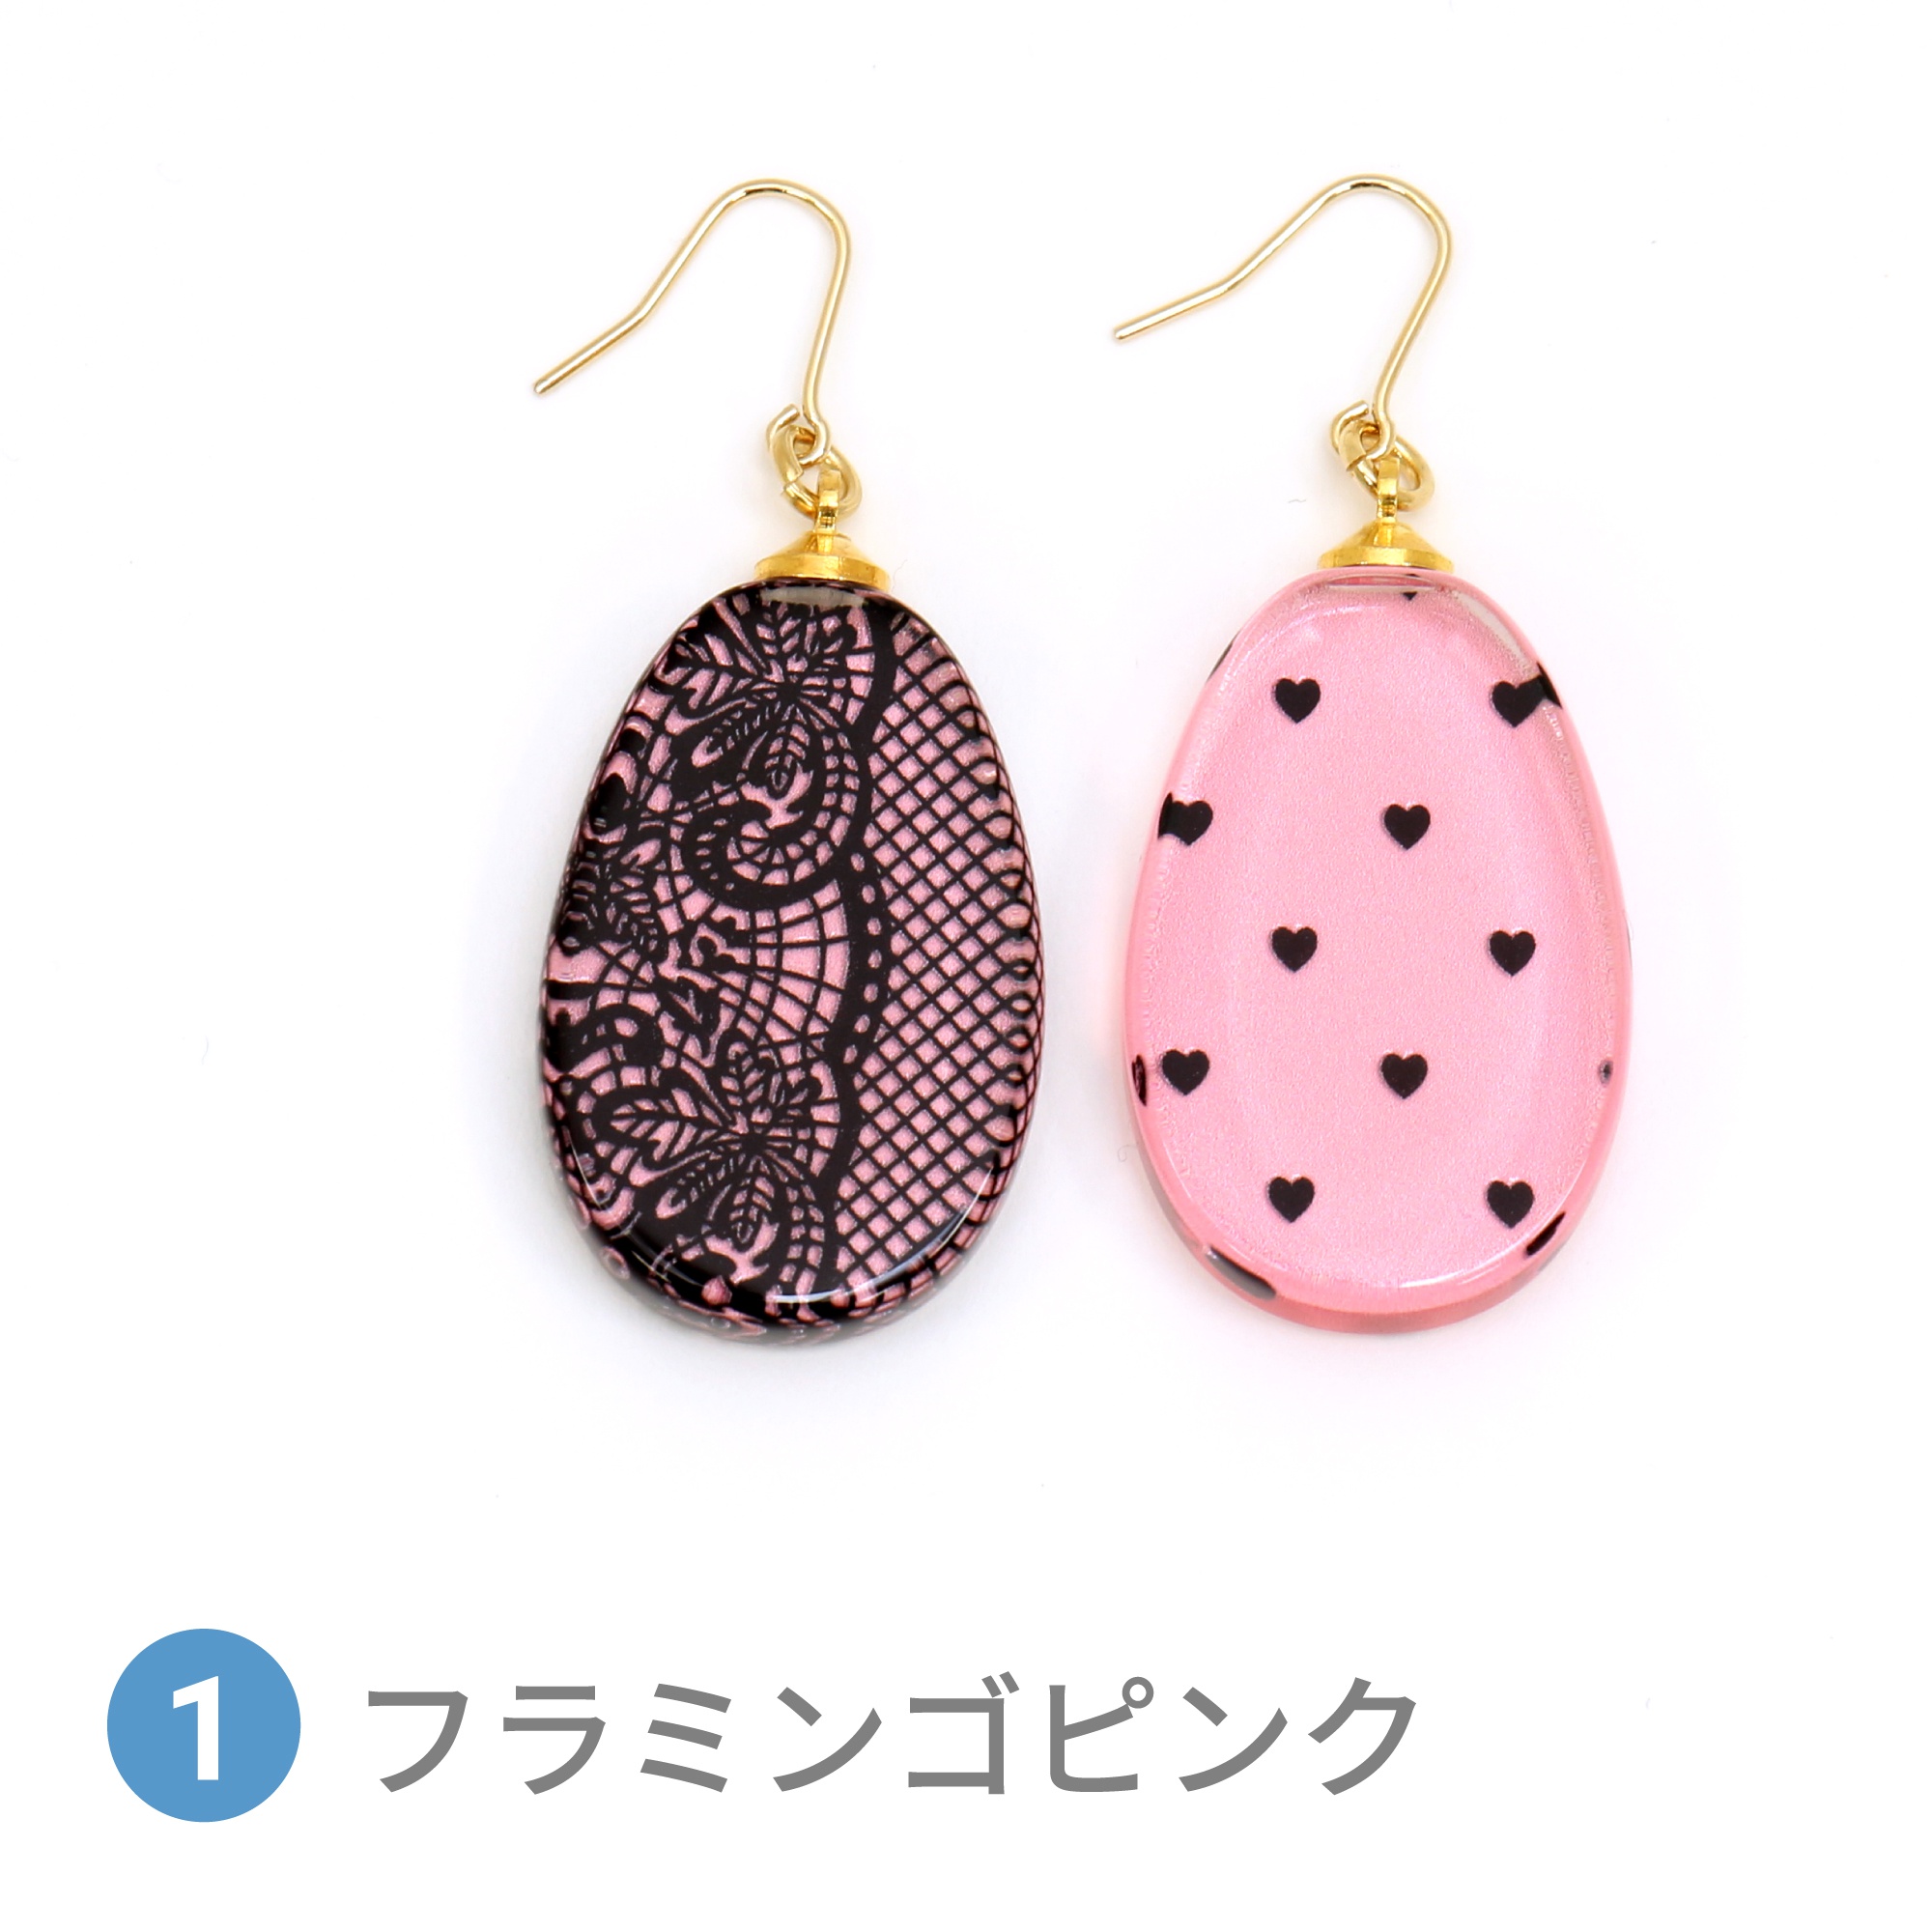 Glass accessories Pierced Earring LACE&HEART flamingo pink drop shape